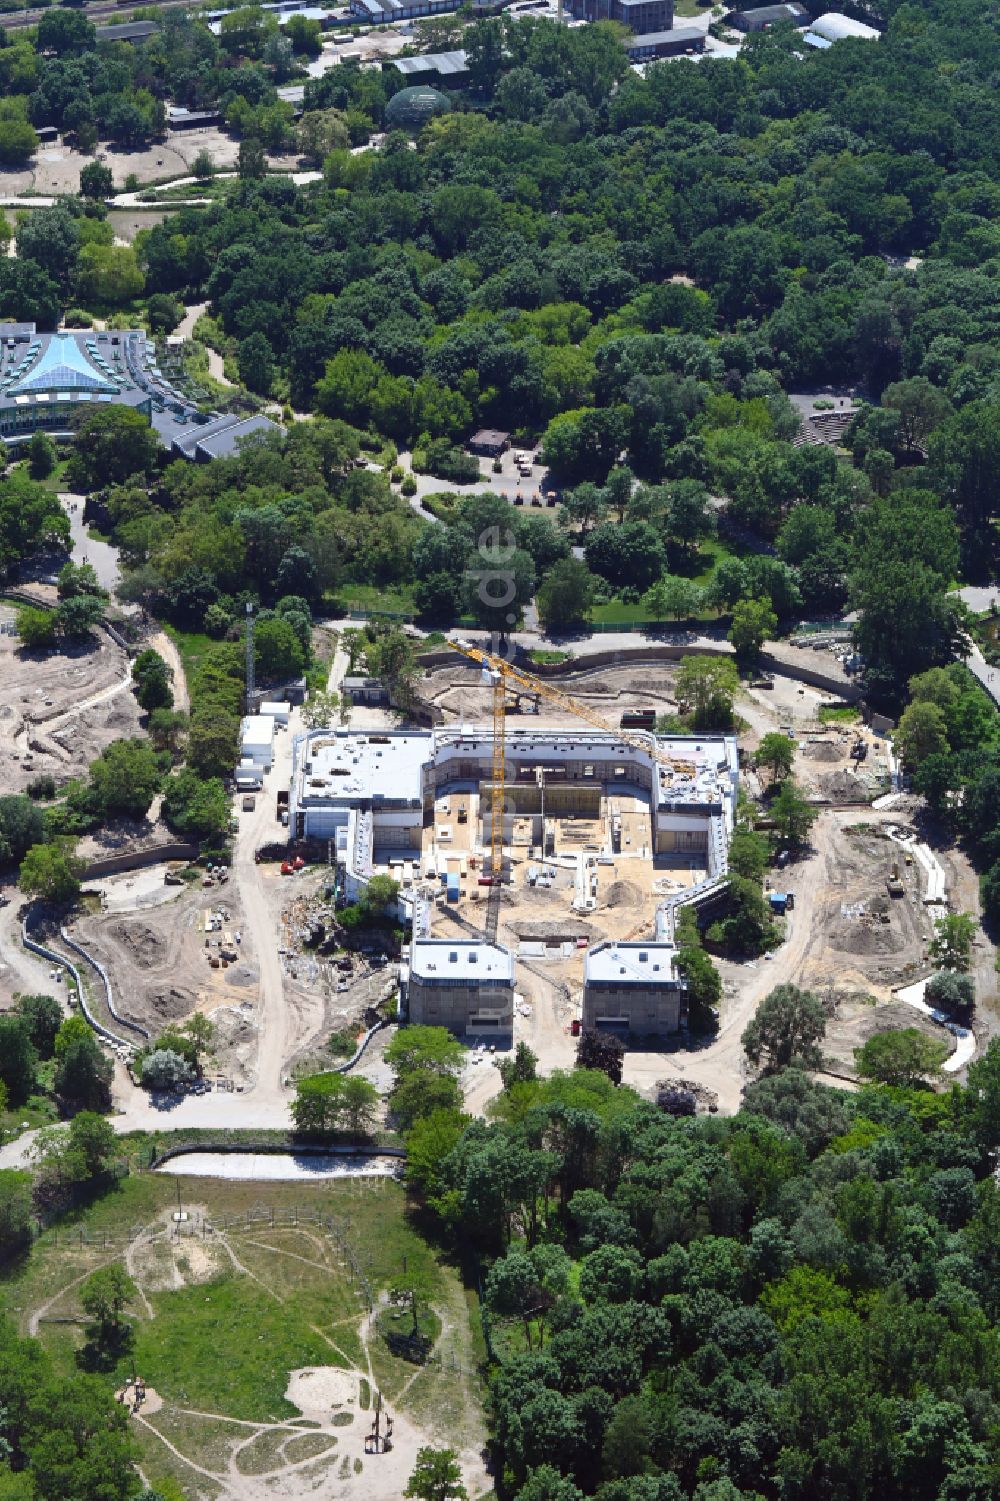 Luftbild Berlin - Sanierung Gebäudekomplex Dickhäuterhaus im Tierpark in Berlin, Deutschland